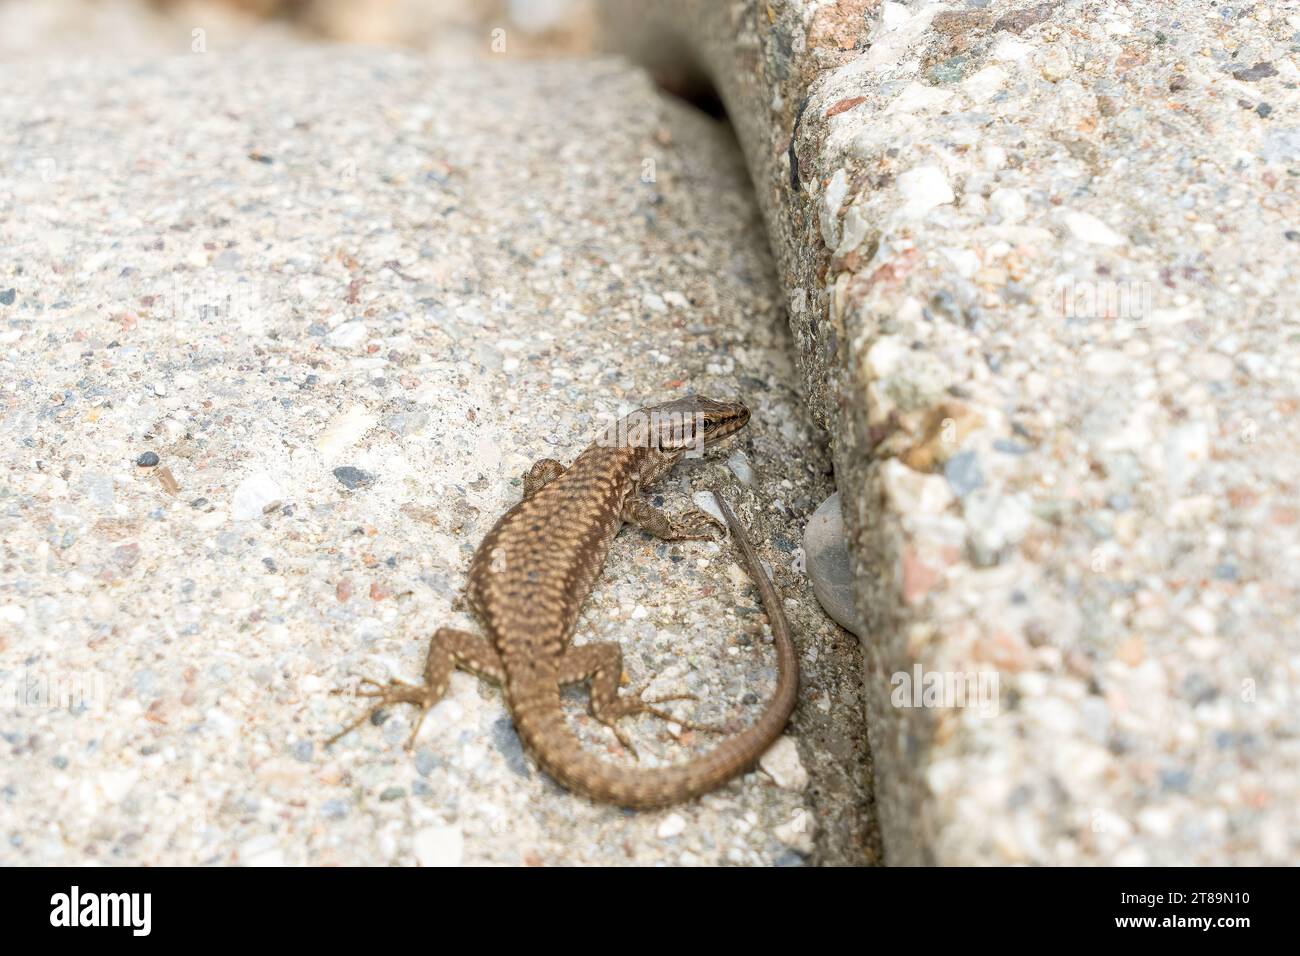 Un lagarto común italiano bañado en el sol Foto de stock